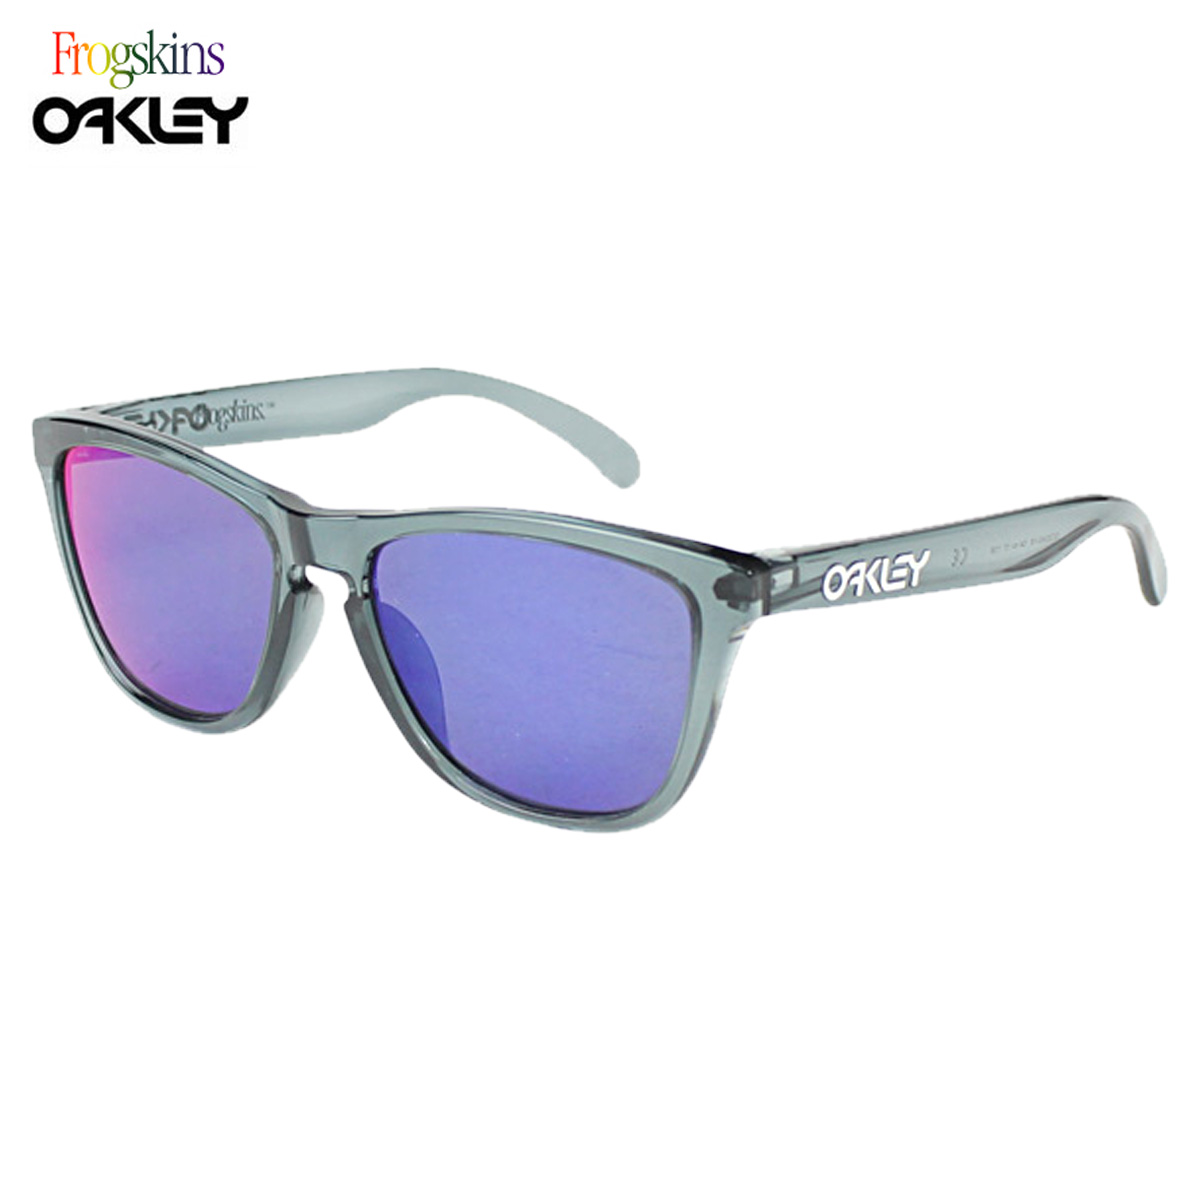 oakley frogskin asian fit sunglasses